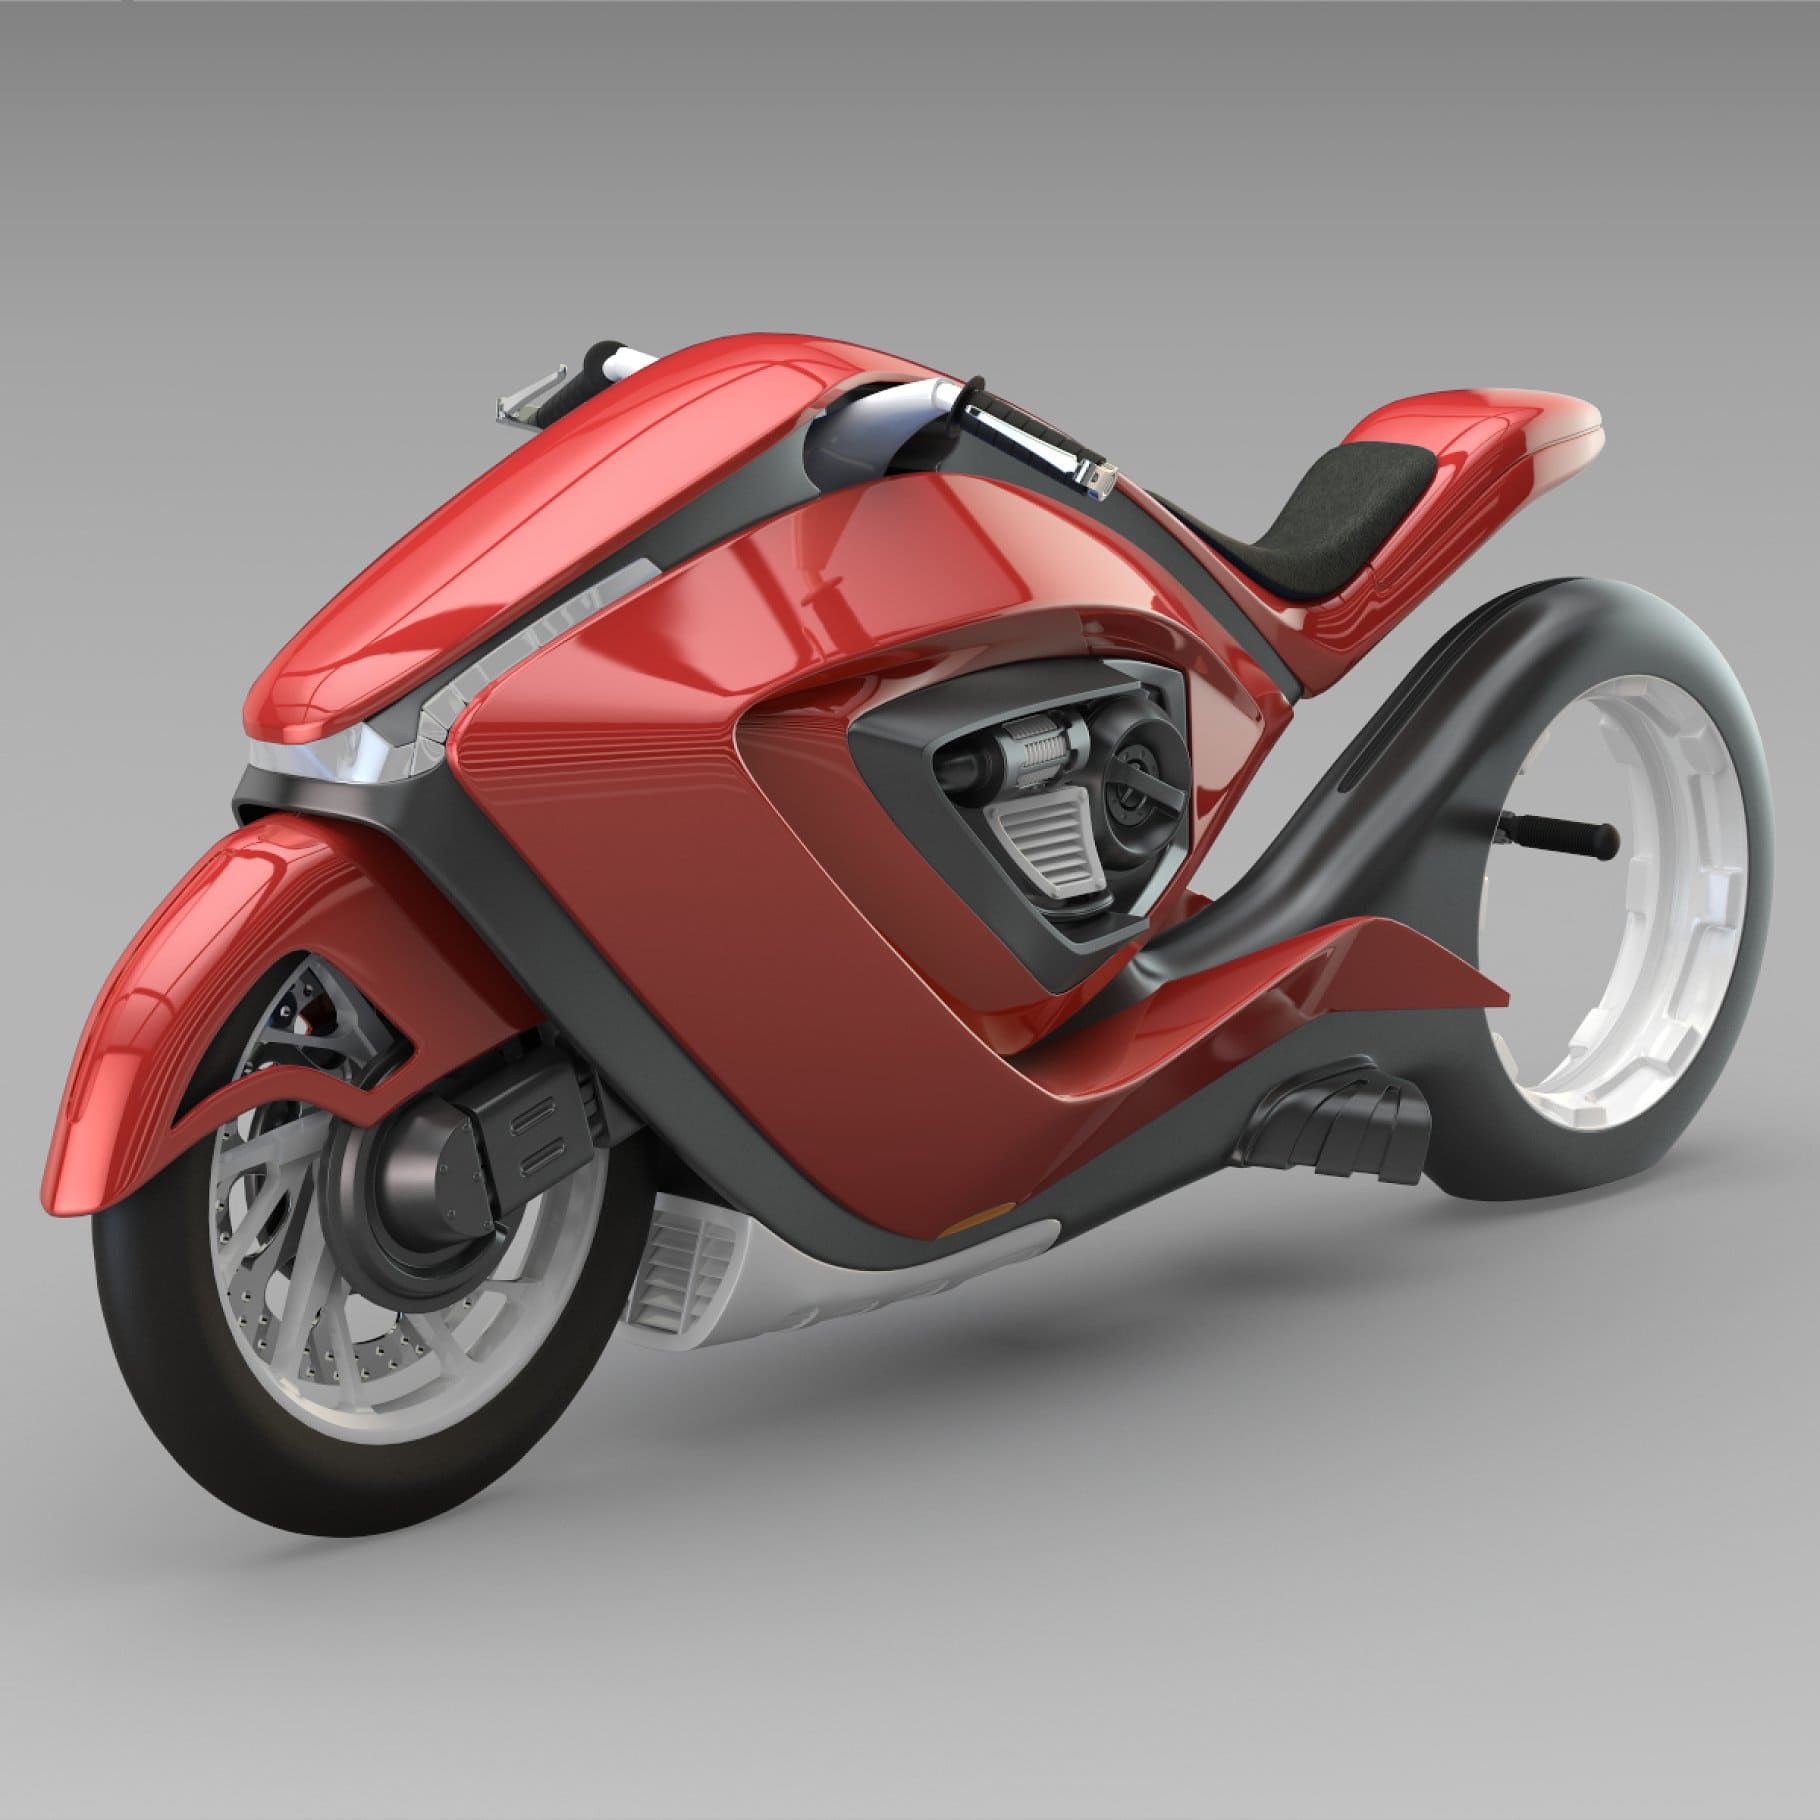 Sport bike futuristic concept, main picture.